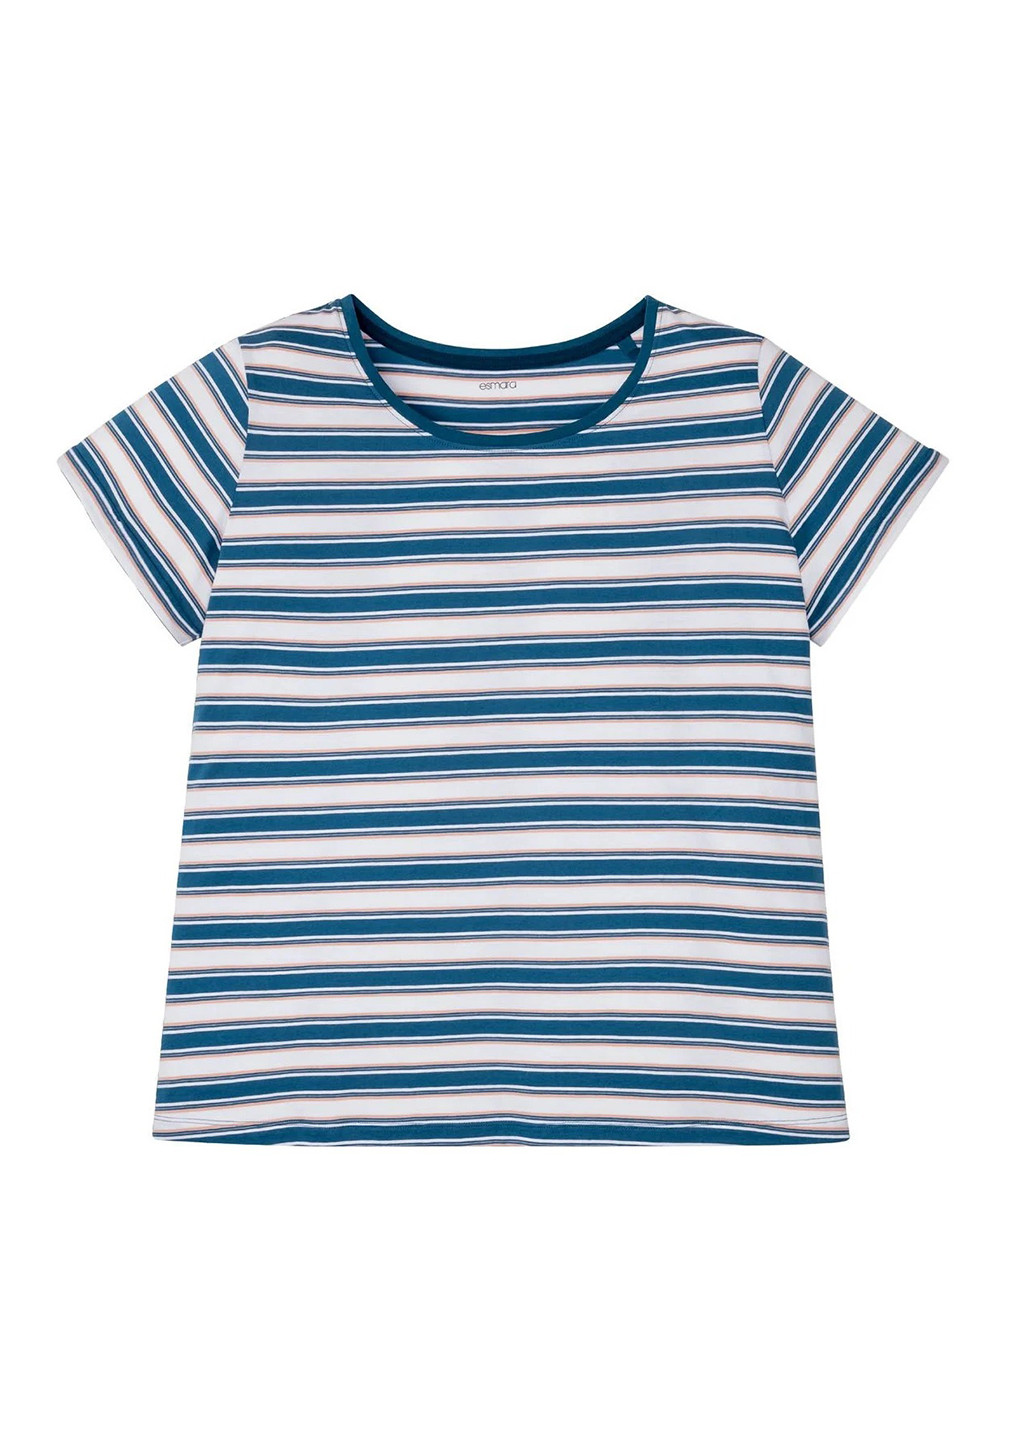 Морской волны всесезон пижама (футболка, бриджи) футболка + бриджи Esmara